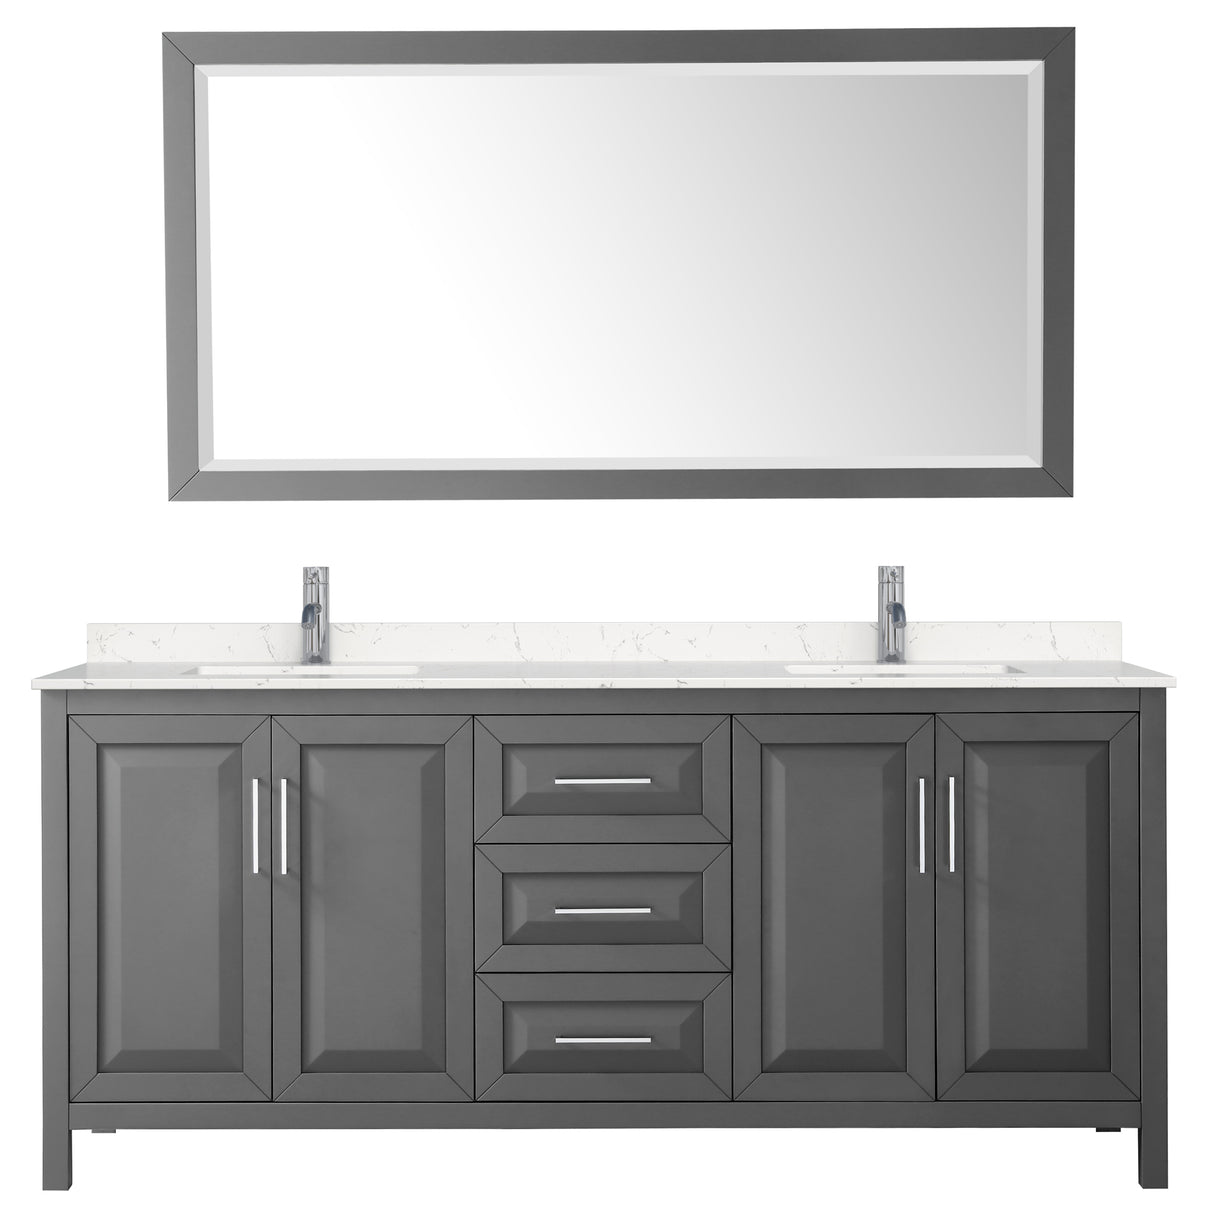 Daria 80 Inch Double Bathroom Vanity in Dark Gray Carrara Cultured Marble Countertop Undermount Square Sinks 70 Inch Mirror